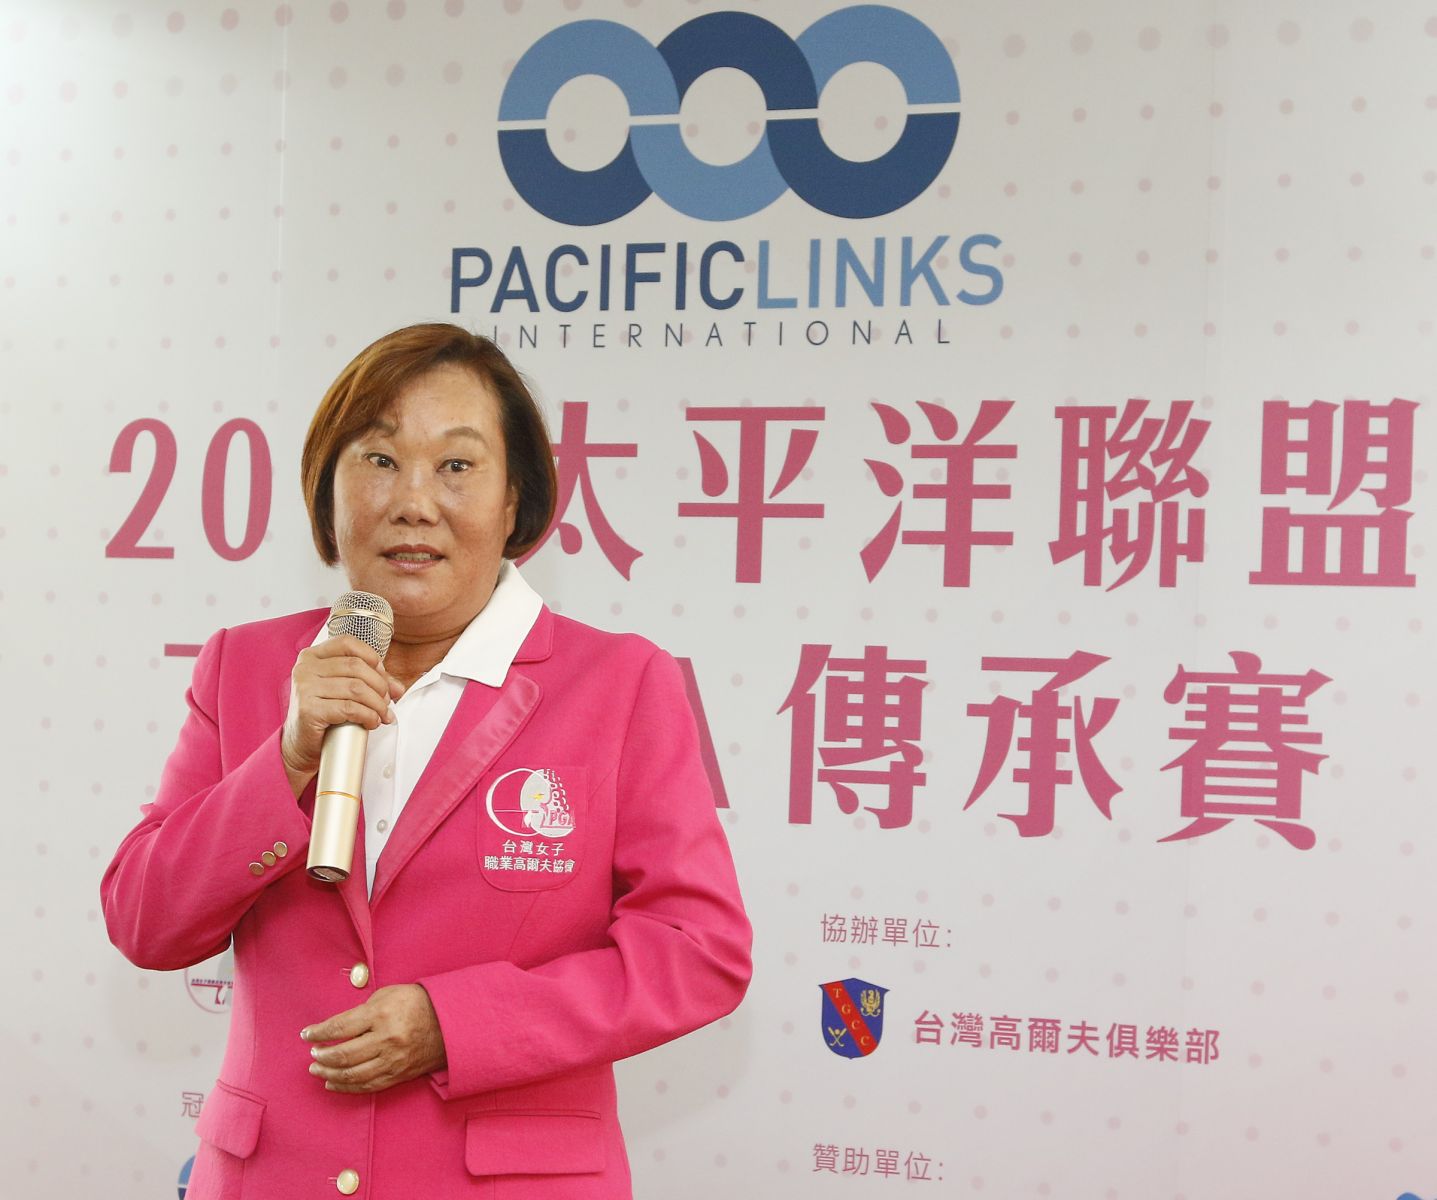 台灣女子職業高爾夫協會理事長劉依貞肯定太平洋聯盟關懷在地、積極提攜台灣高爾夫發展的經營理念。